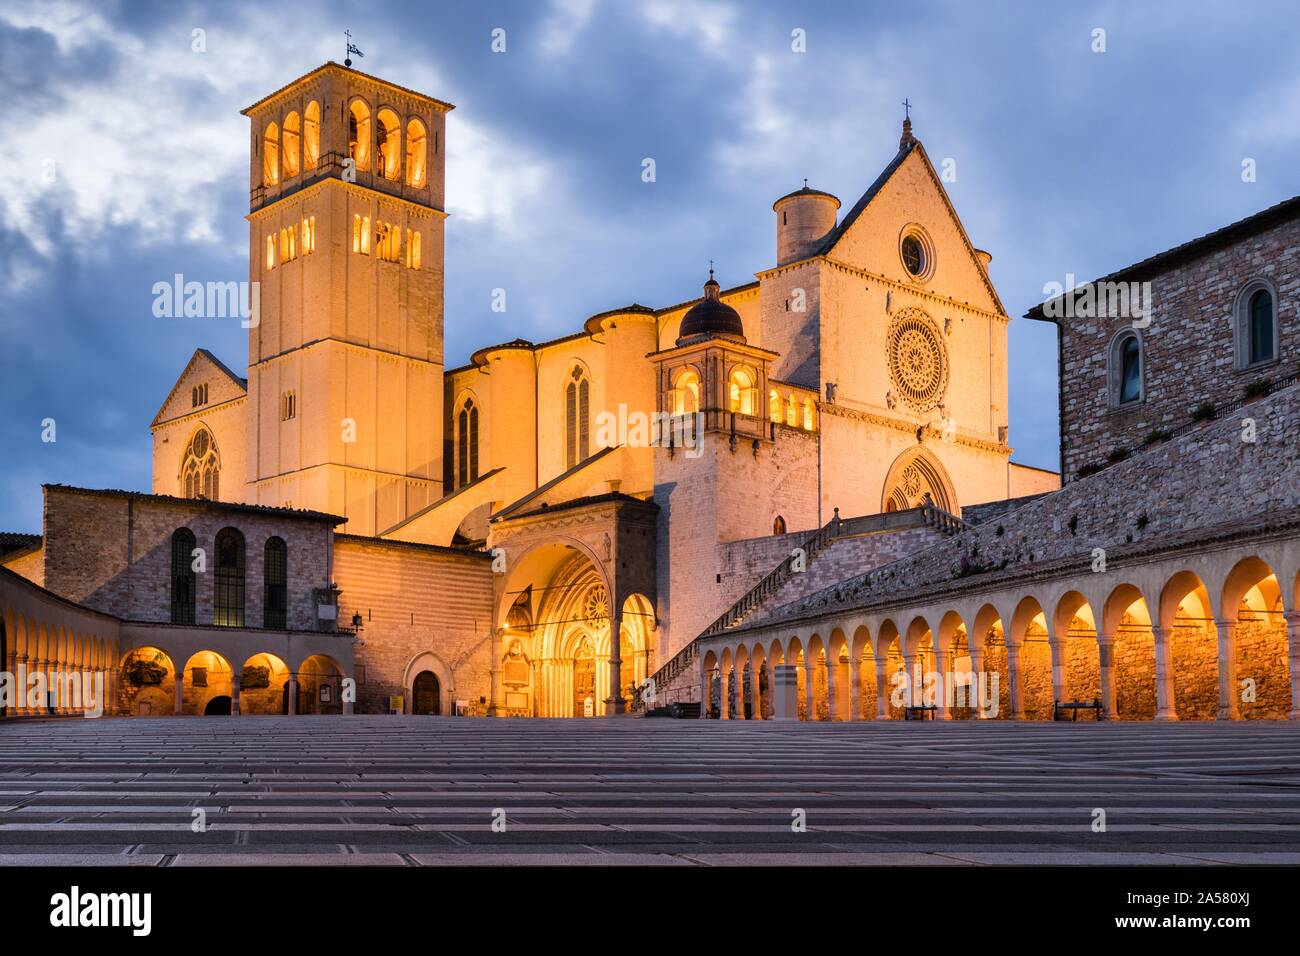 La basilique de San Francesco, crépuscule, UNESCO World Heritage Site, Assisi, Umbria, Italie Banque D'Images